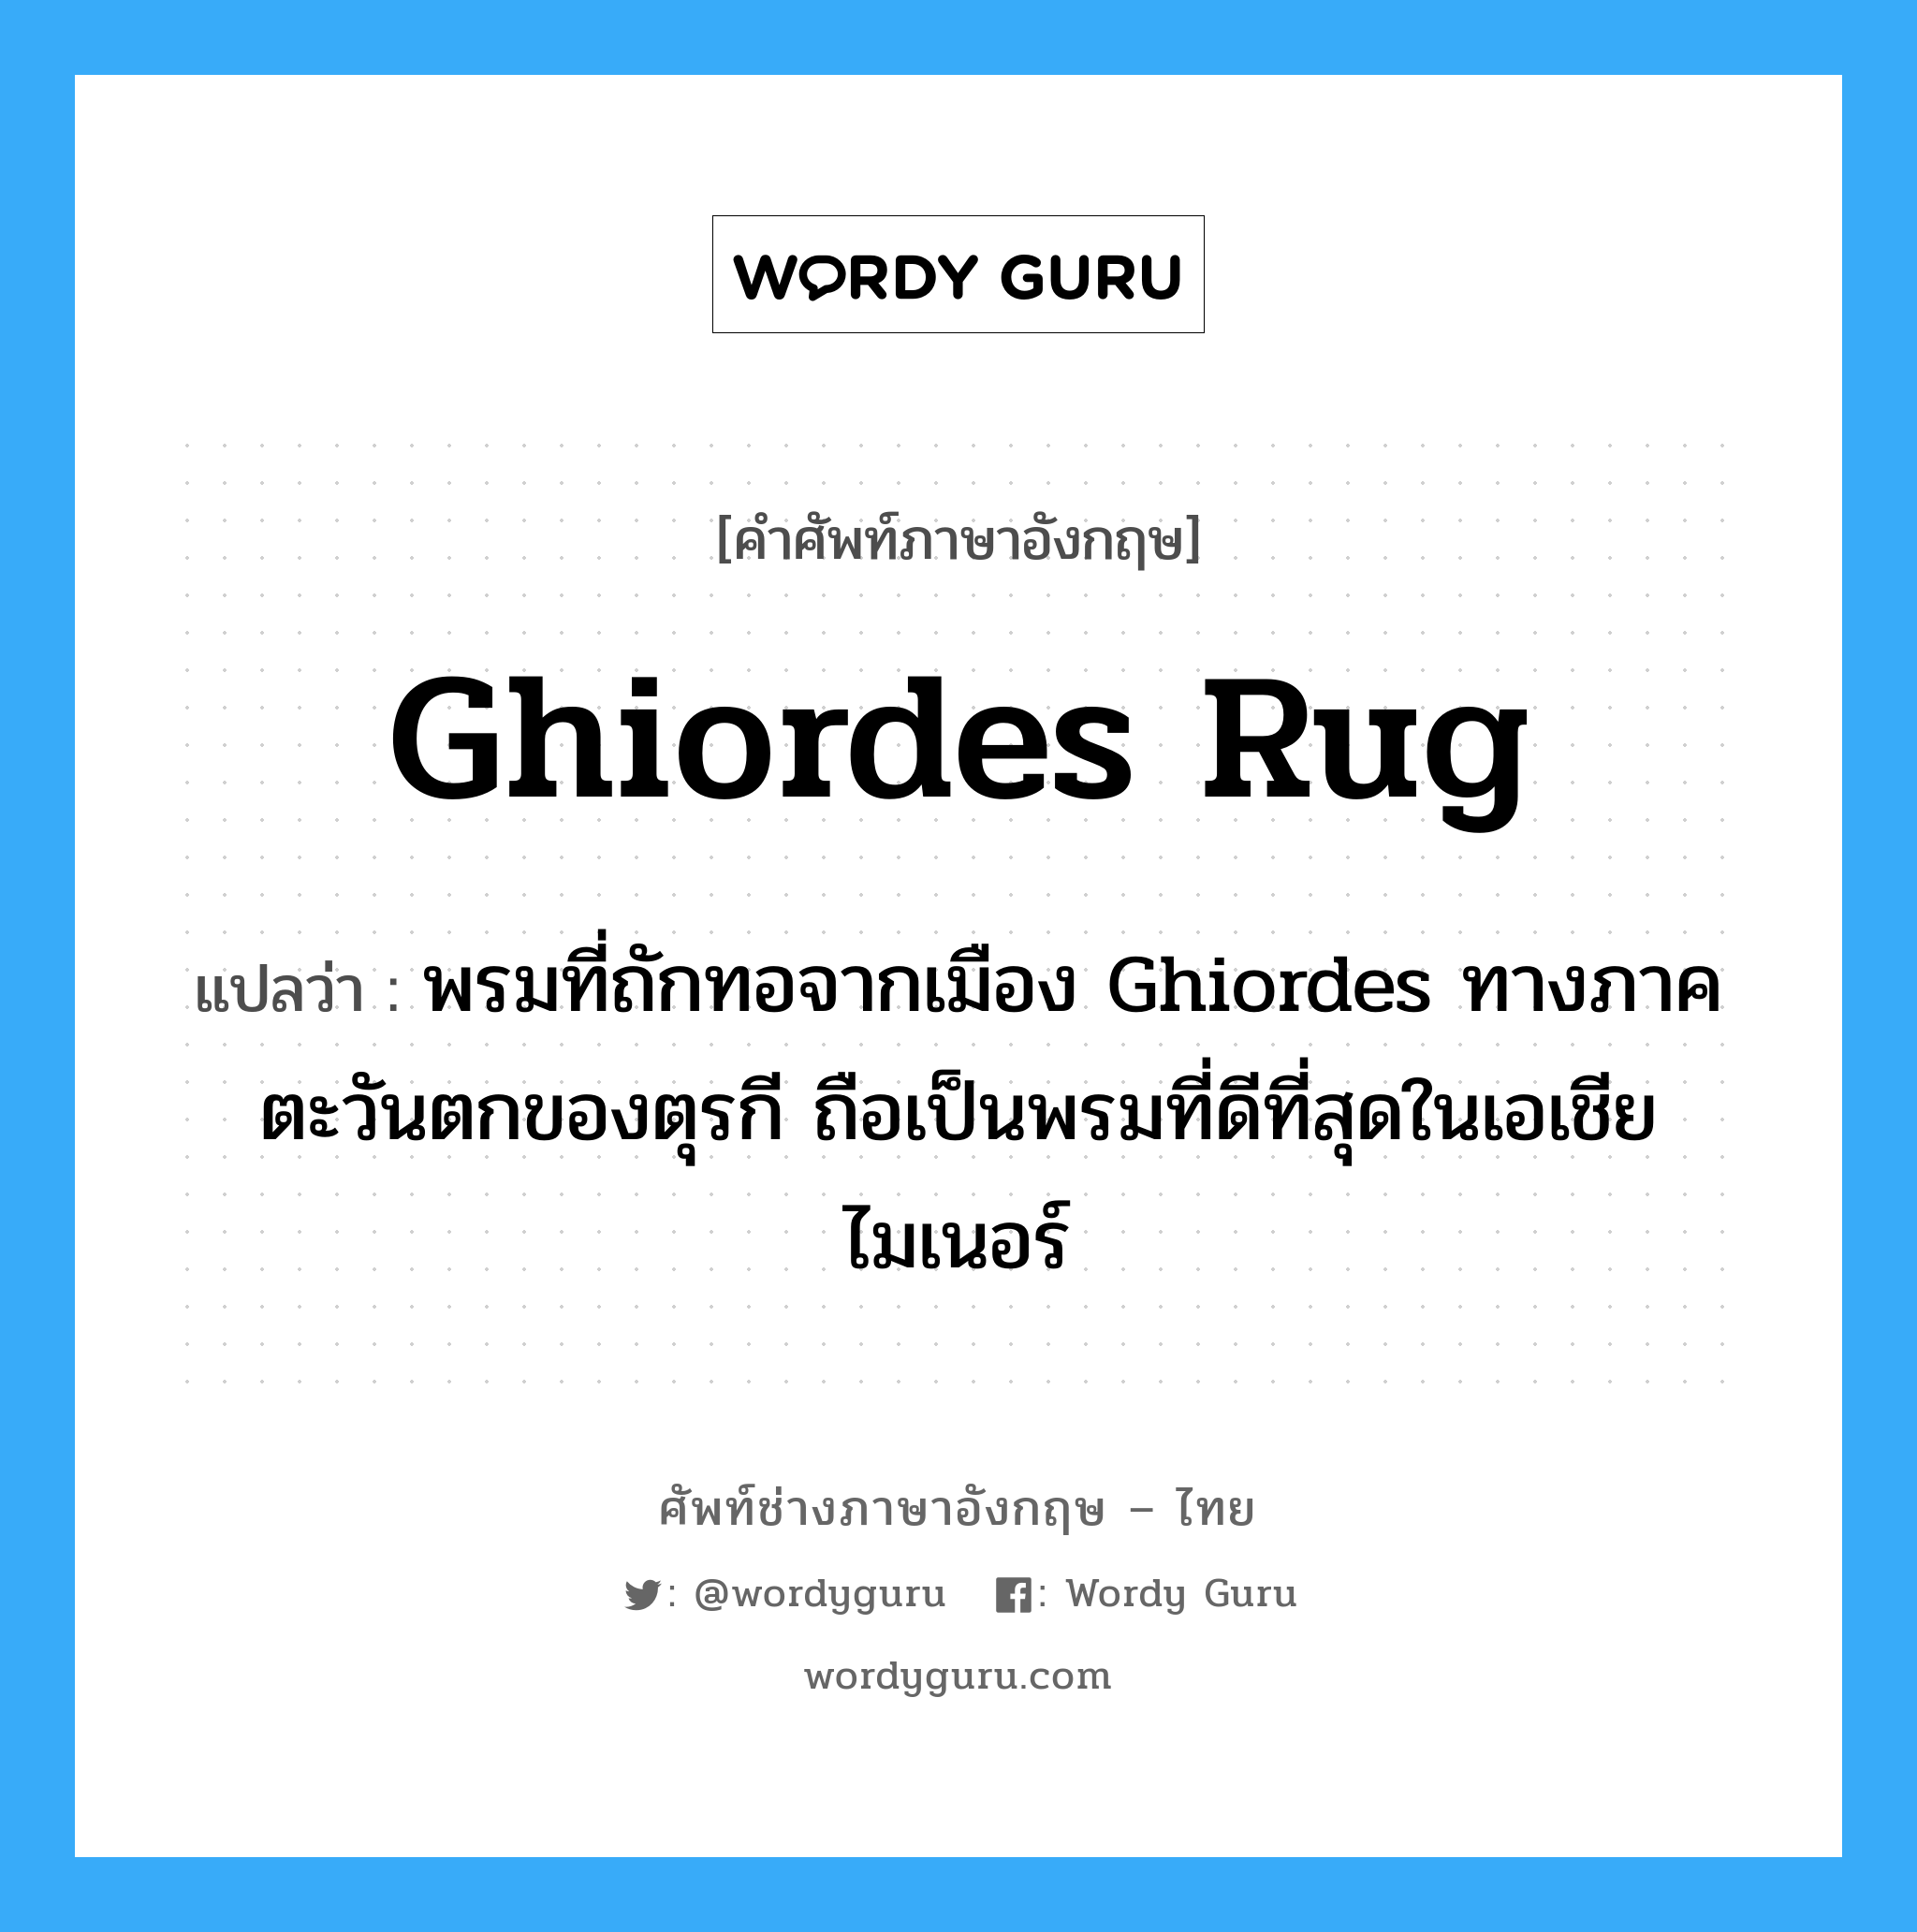 Ghiordes rug แปลว่า?, คำศัพท์ช่างภาษาอังกฤษ - ไทย Ghiordes rug คำศัพท์ภาษาอังกฤษ Ghiordes rug แปลว่า พรมที่ถักทอจากเมือง Ghiordes ทางภาคตะวันตกของตุรกี ถือเป็นพรมที่ดีที่สุดในเอเชียไมเนอร์